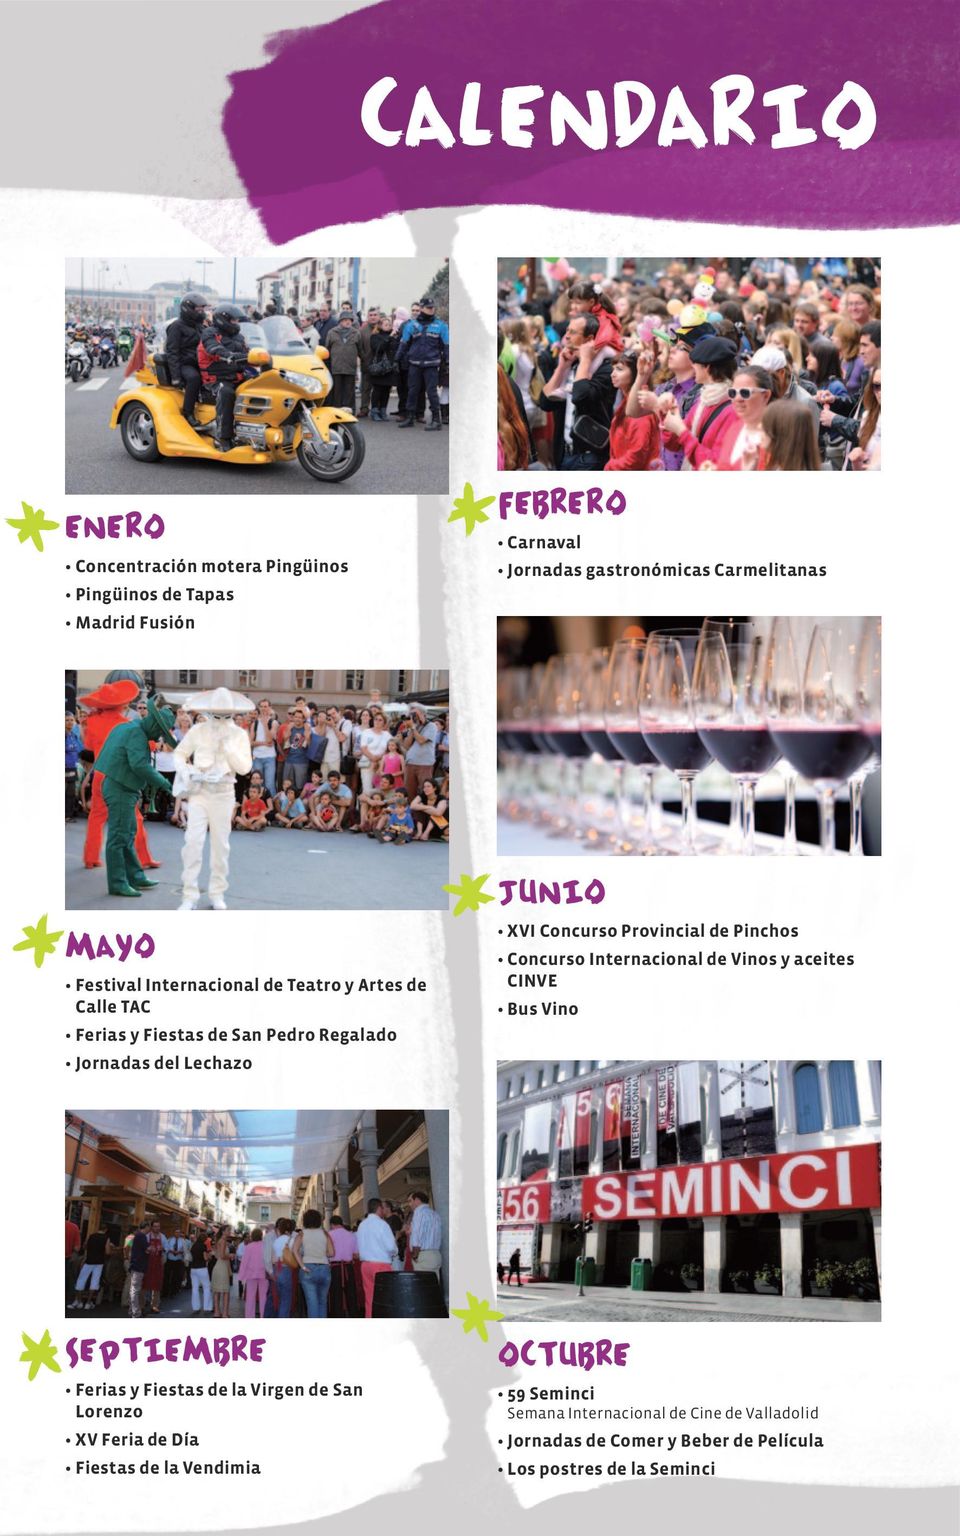 Provincial de Pinchos Concurso Internacional de Vinos y aceites CINVE Bus Vino septiembre Ferias y Fiestas de la Virgen de San Lorenzo XV